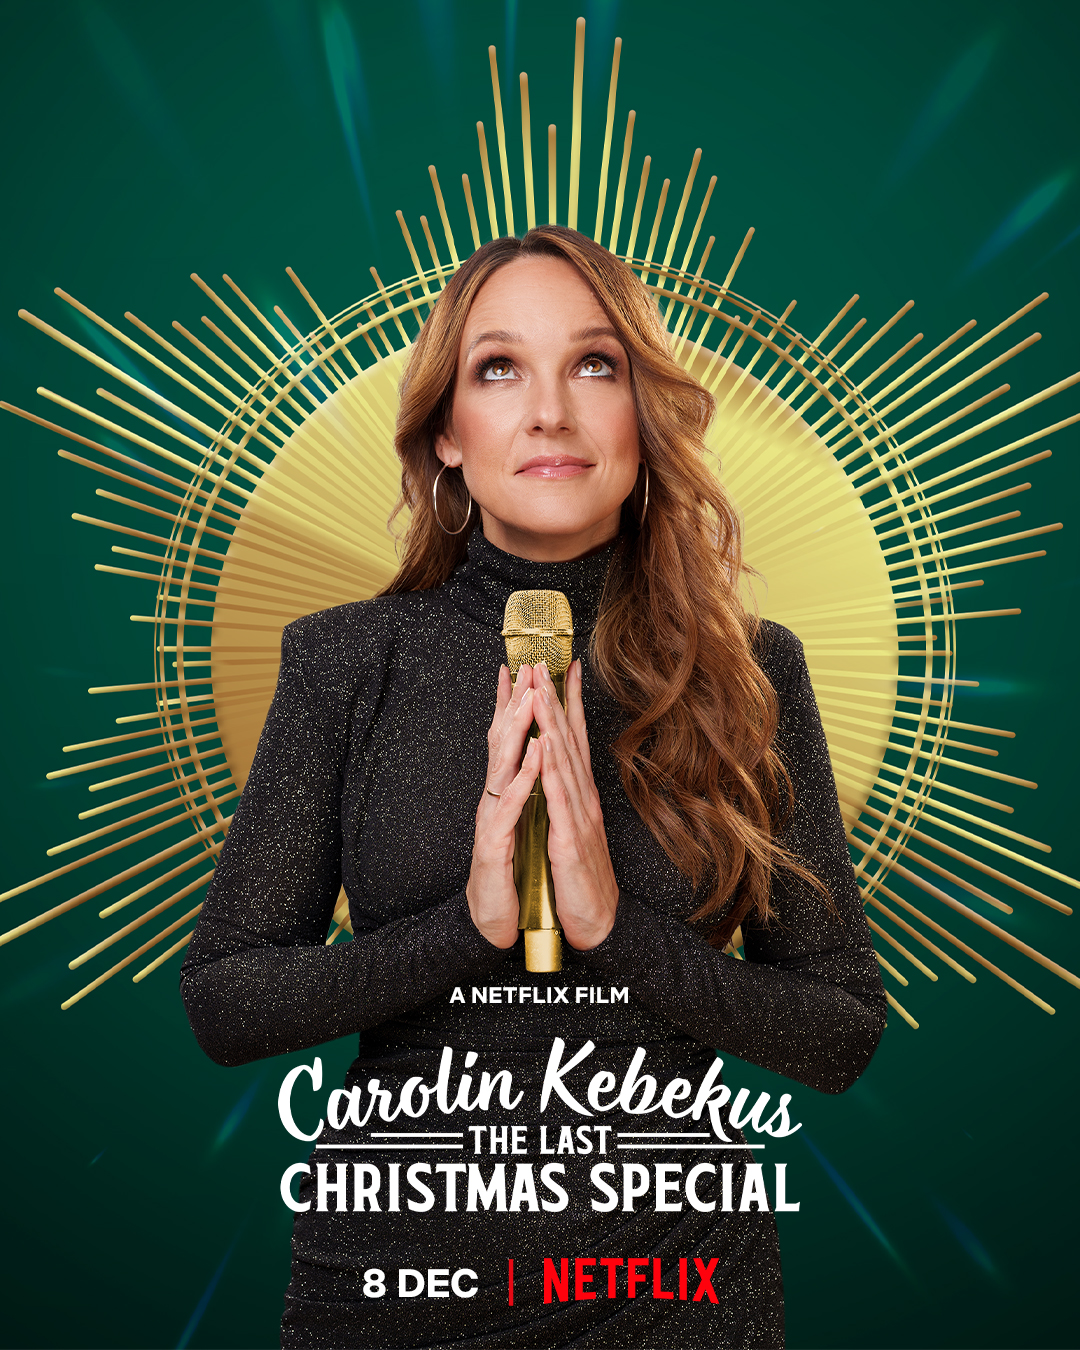 Is Carolin Kebekus The Last Christmas Special on Netflix